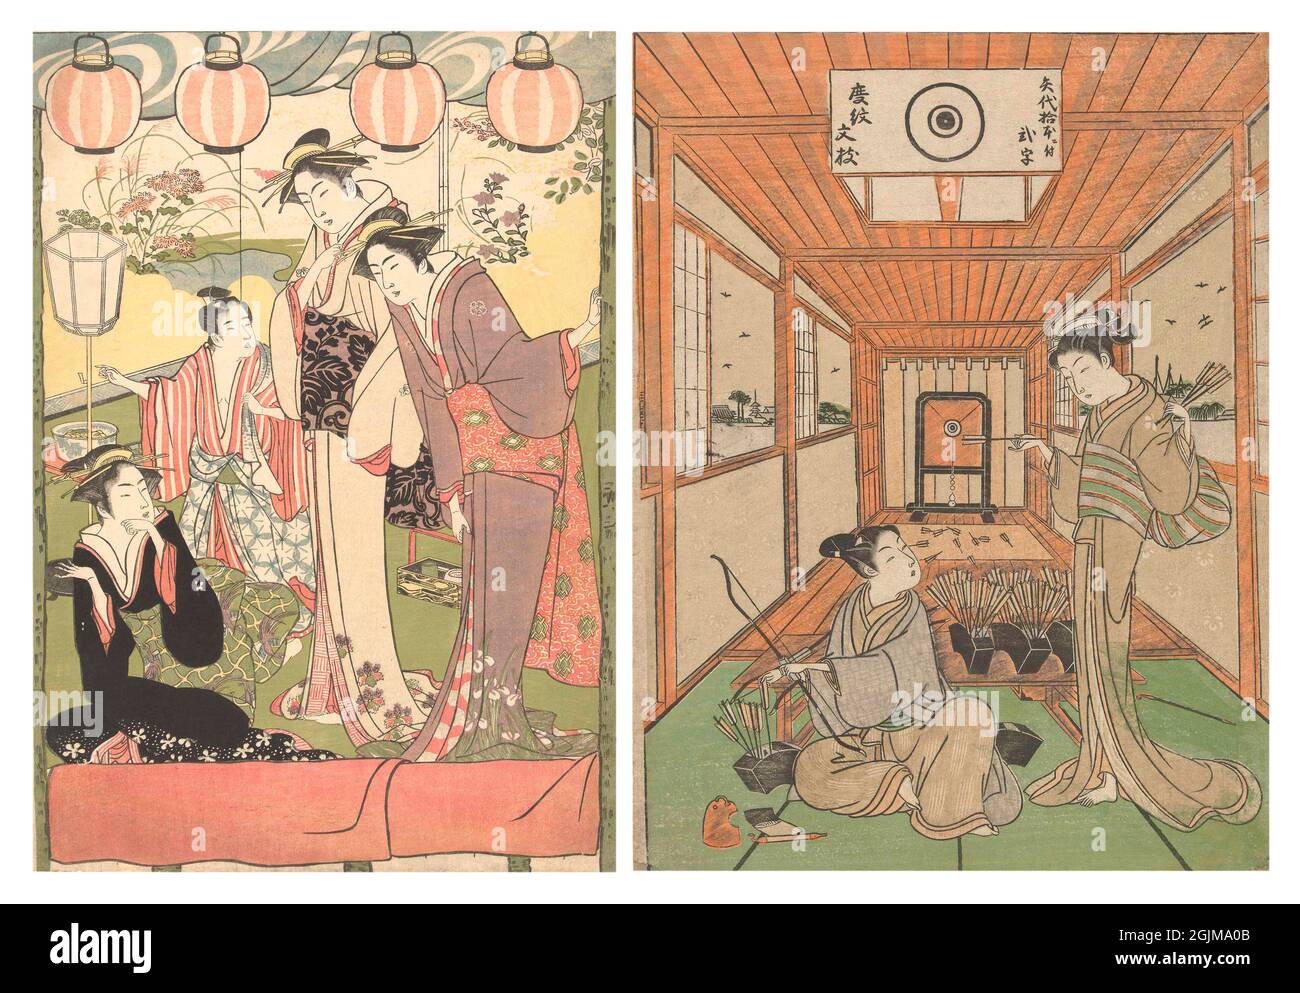 A sinistra: Tre donne e un ragazzo sotto le lanterne (1780 - 1785) a destra: Uomo e donna giapponese a un poligono di tiro. Giovane seduto con arco in mano, riempiendo una ciotola con frecce che gli sono consegnate da una ragazza; sullo sfondo un poligono di tiro. Disposizione esclusiva ottimizzata e migliorata di due illustrazioni storiche in legno giapponese. Foto Stock